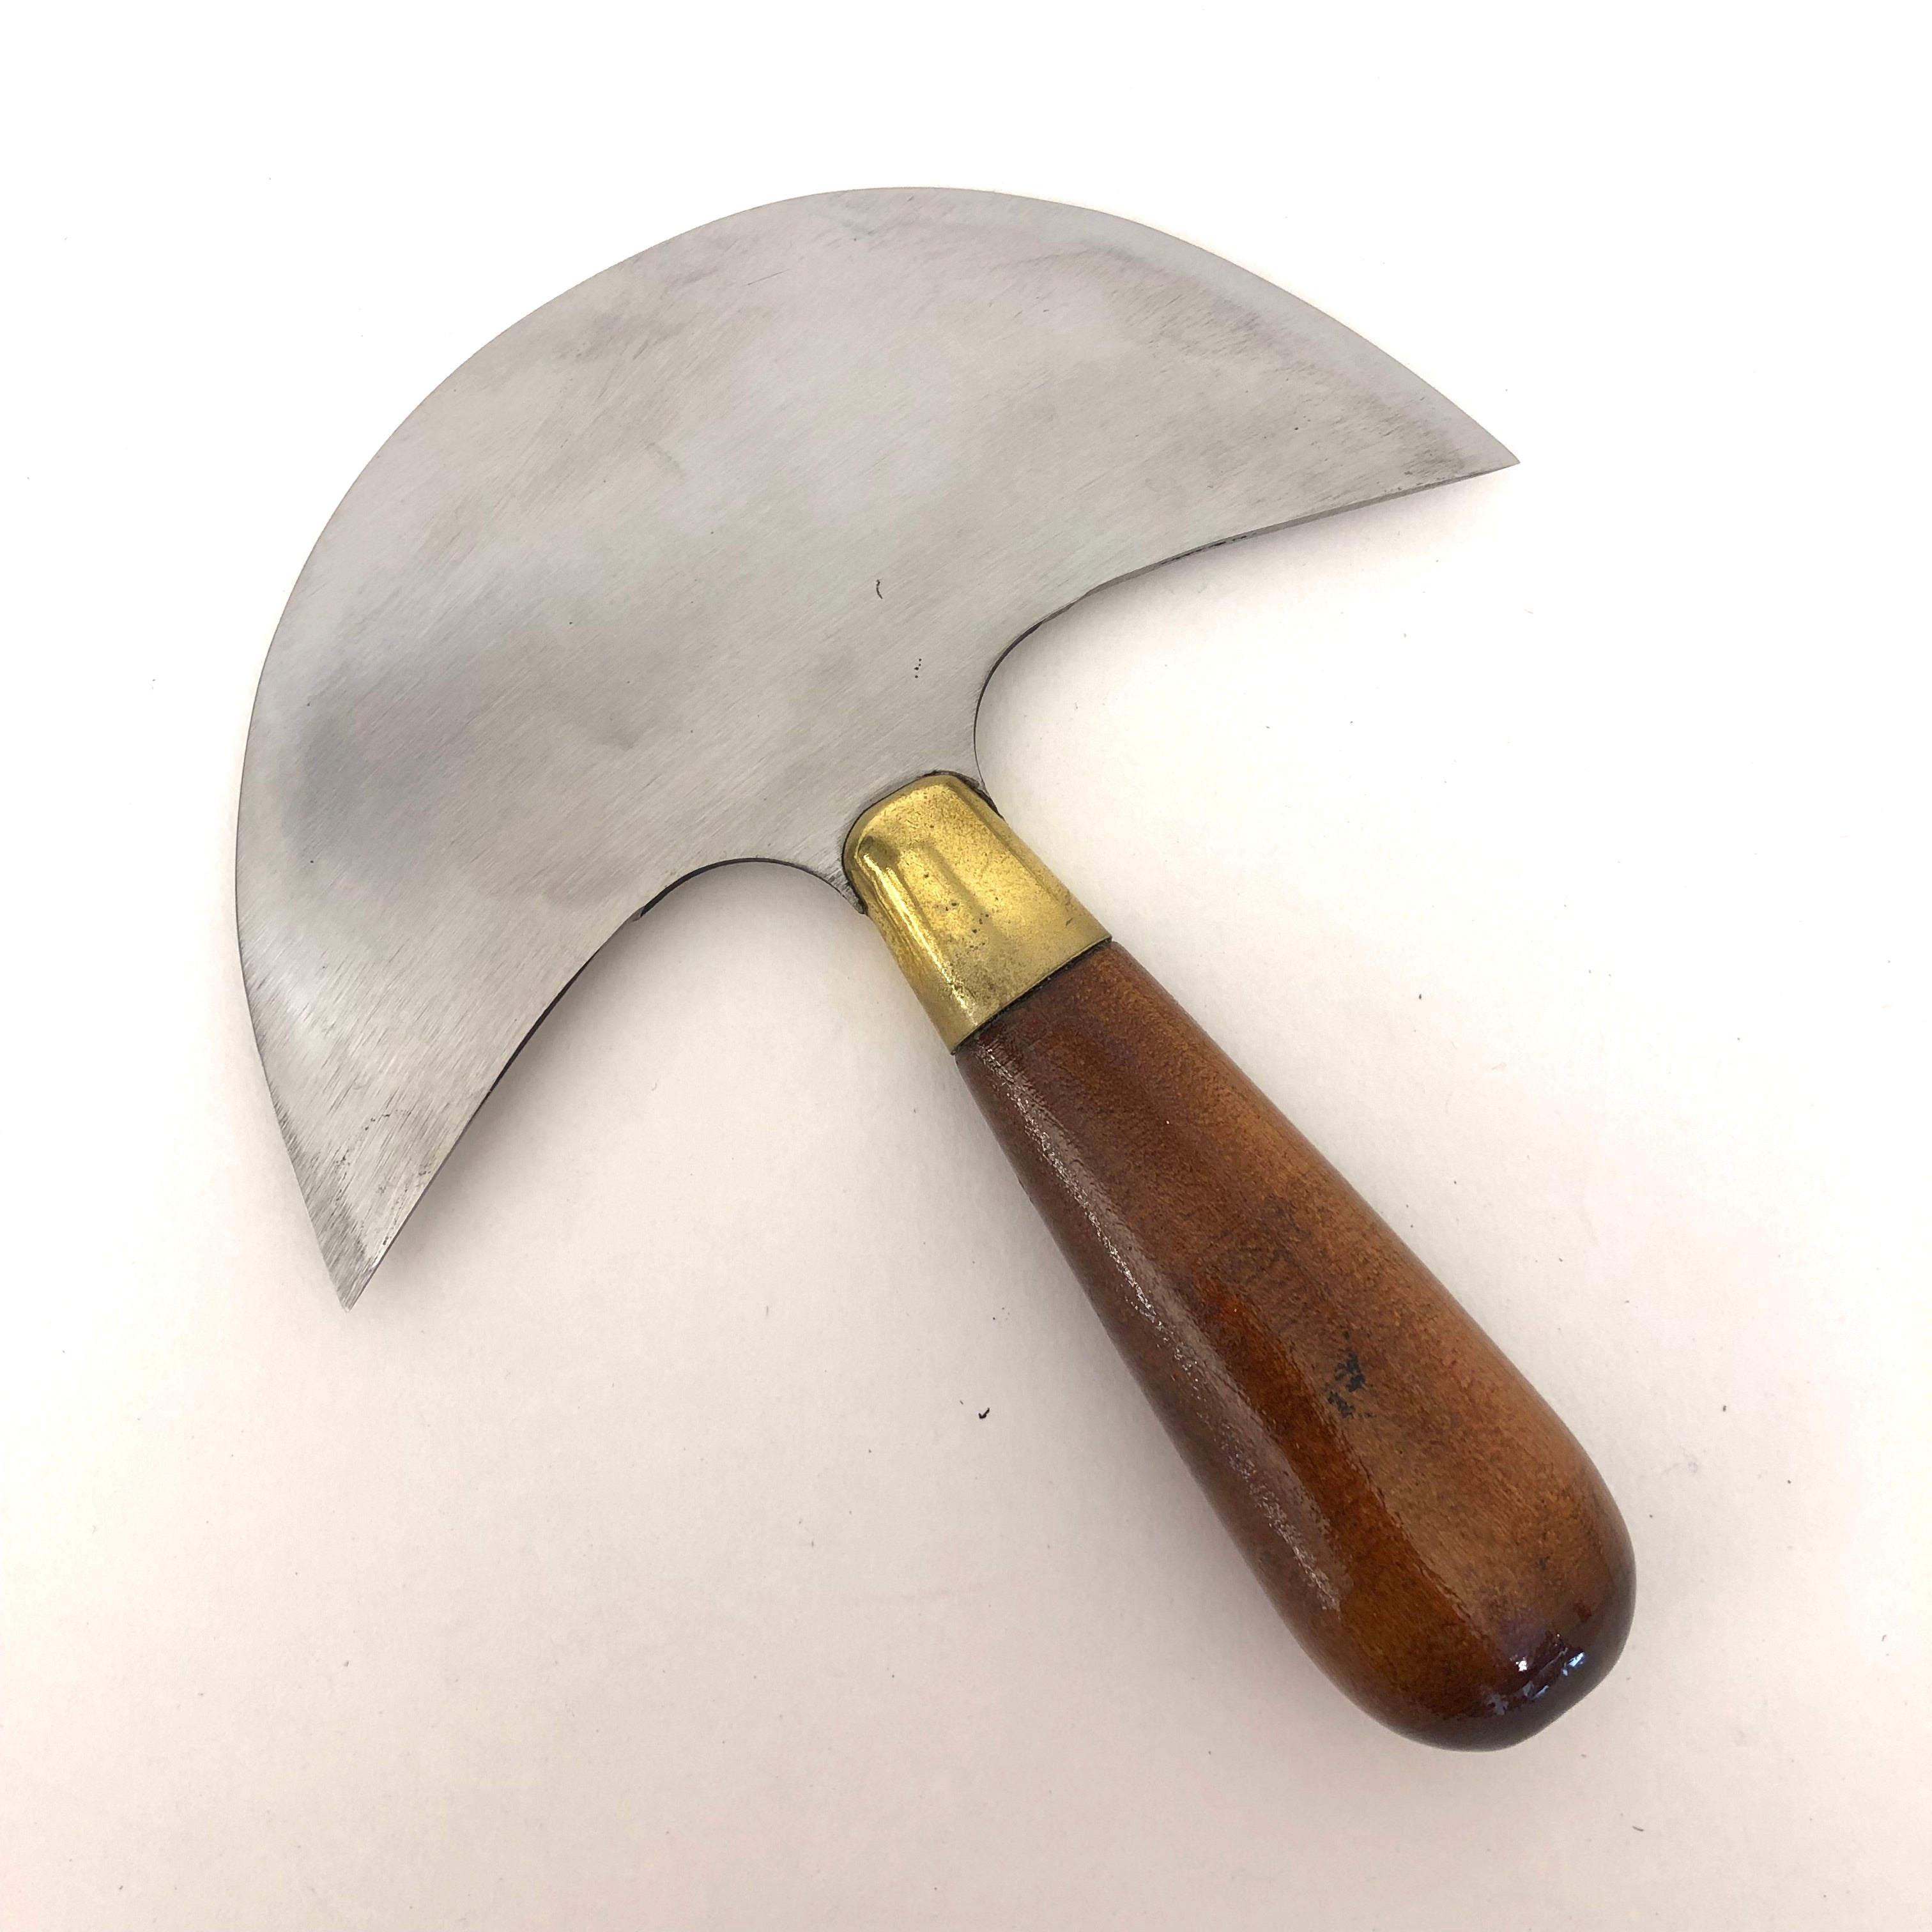 Strap cutter/plough with blade, vergez blanchard